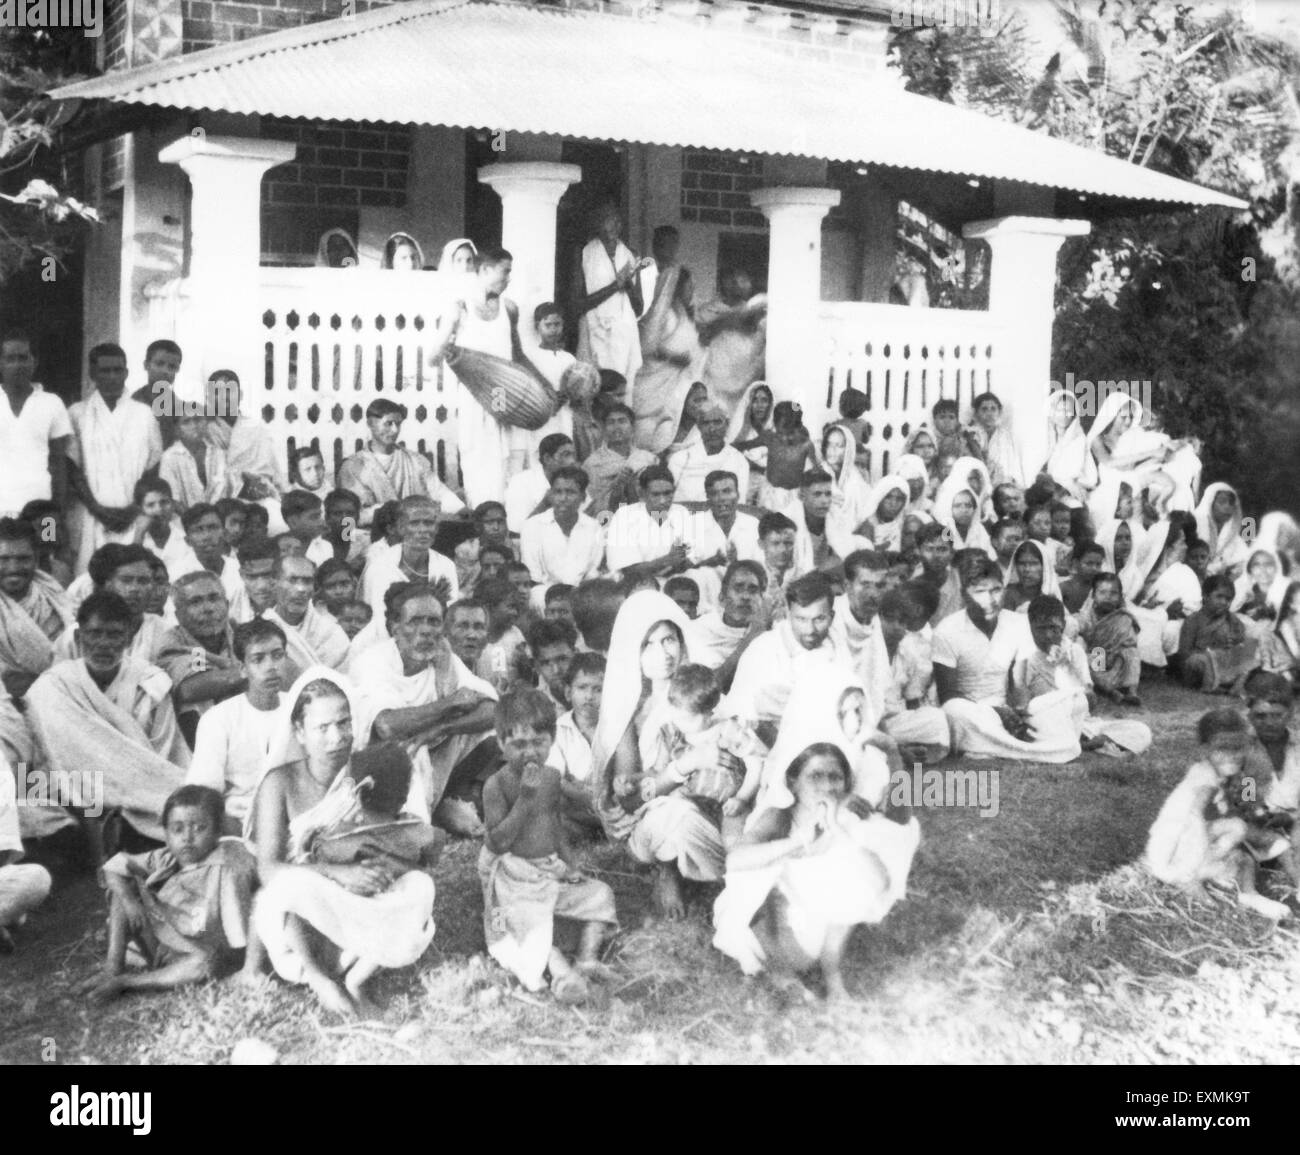 Les gens à une réunion de prière dans la zone touchée par l'émeute de Noakhali East Bengal ; novembre 1946 ; Inde PAS DE MR Banque D'Images